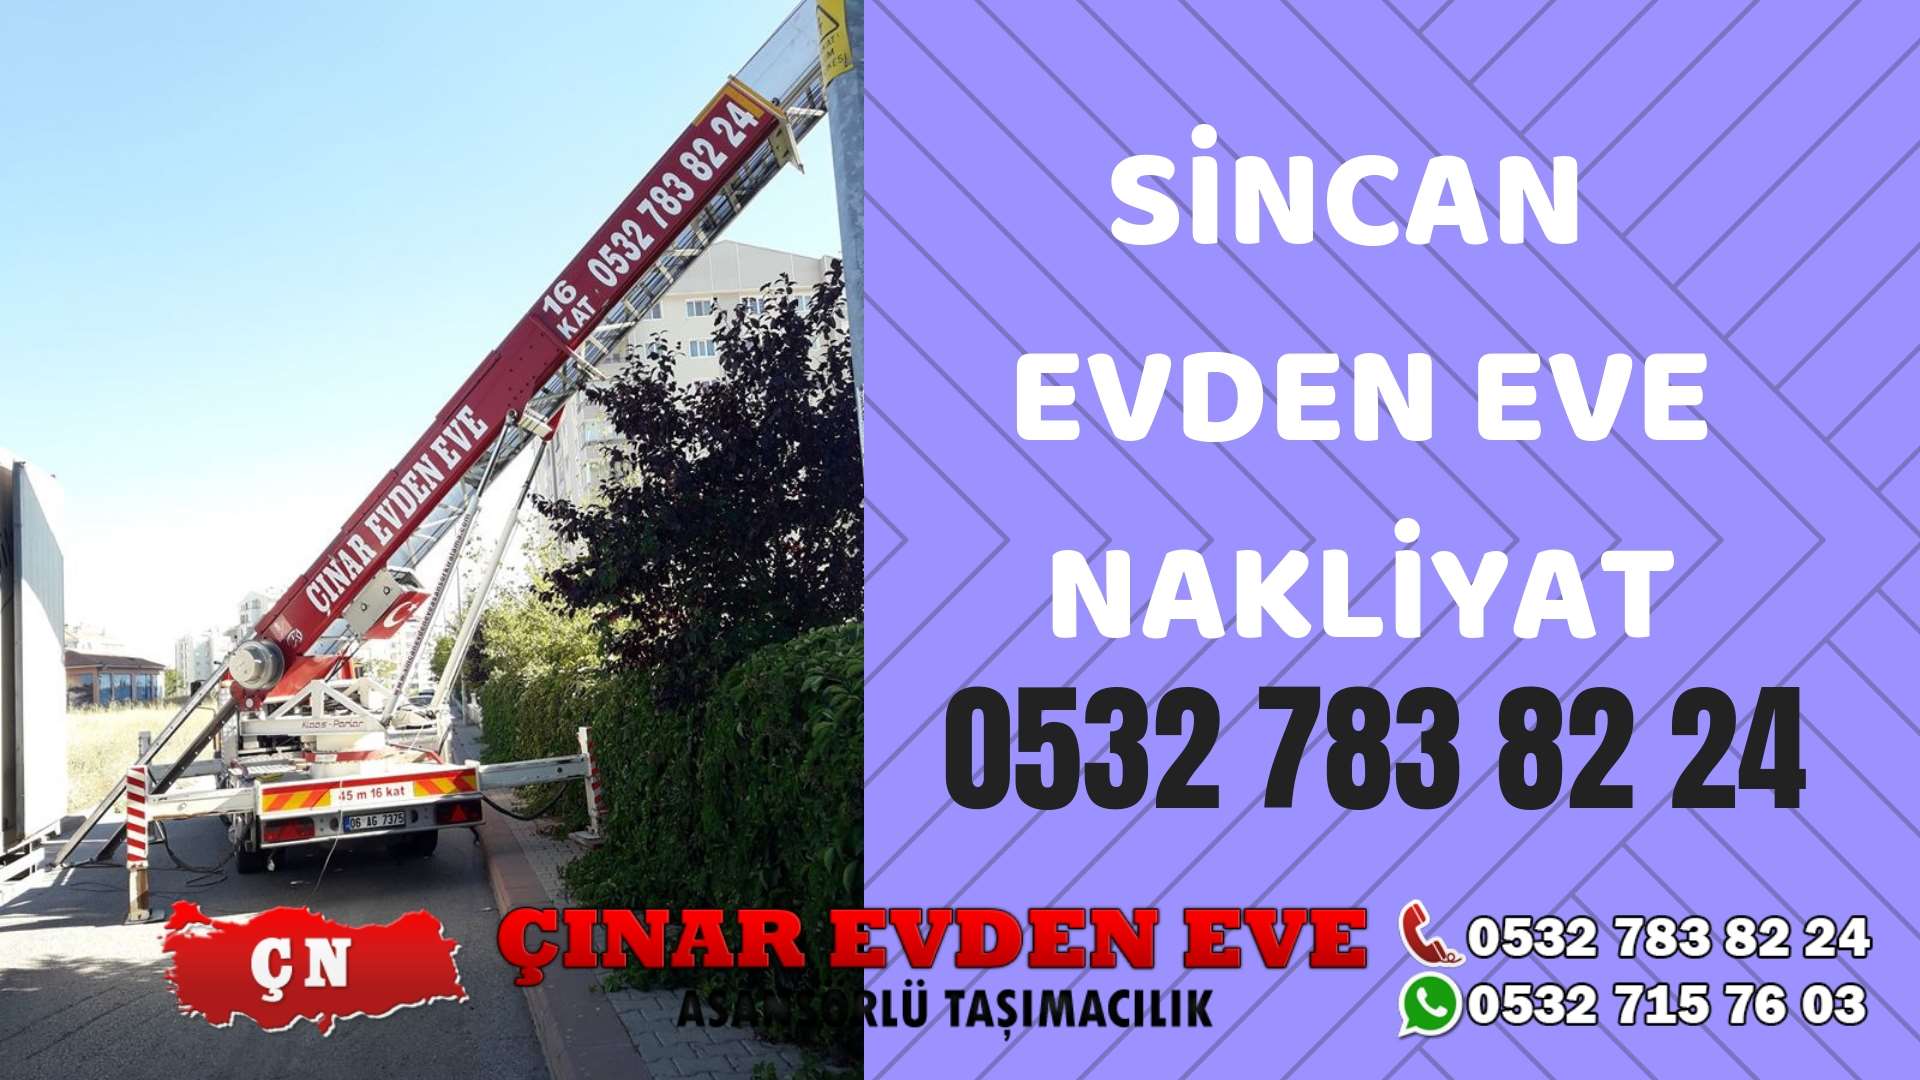 Ankara Yahyalar Sincan evden eve asansörlü nakliyat en ucuz nakliye 0532 715 76 03